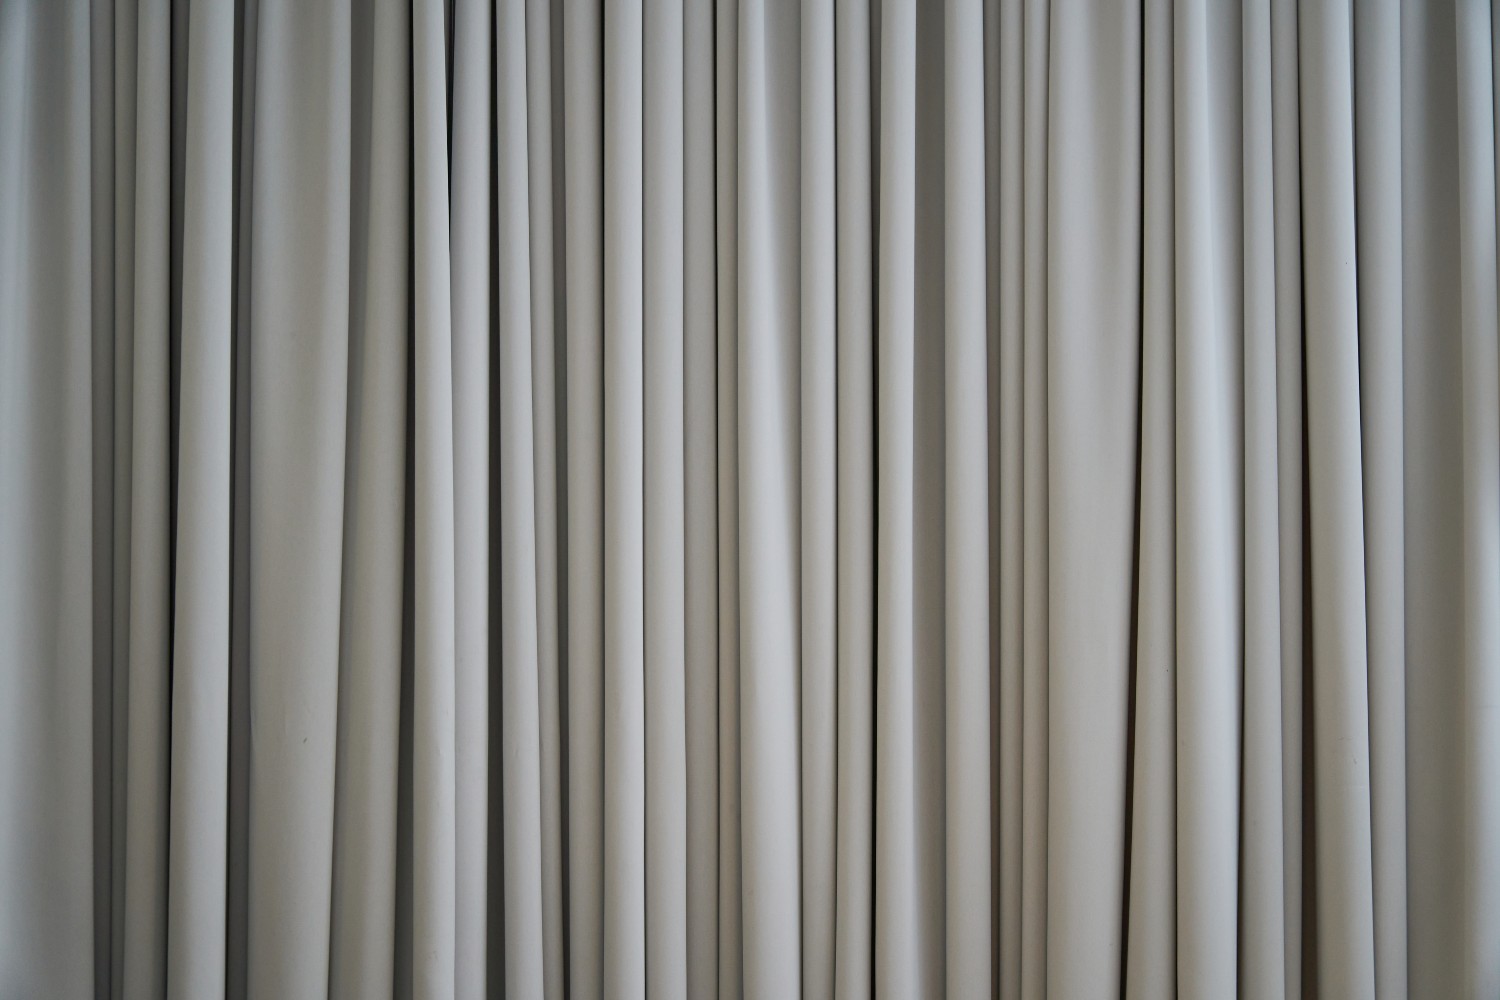 Silk curtains